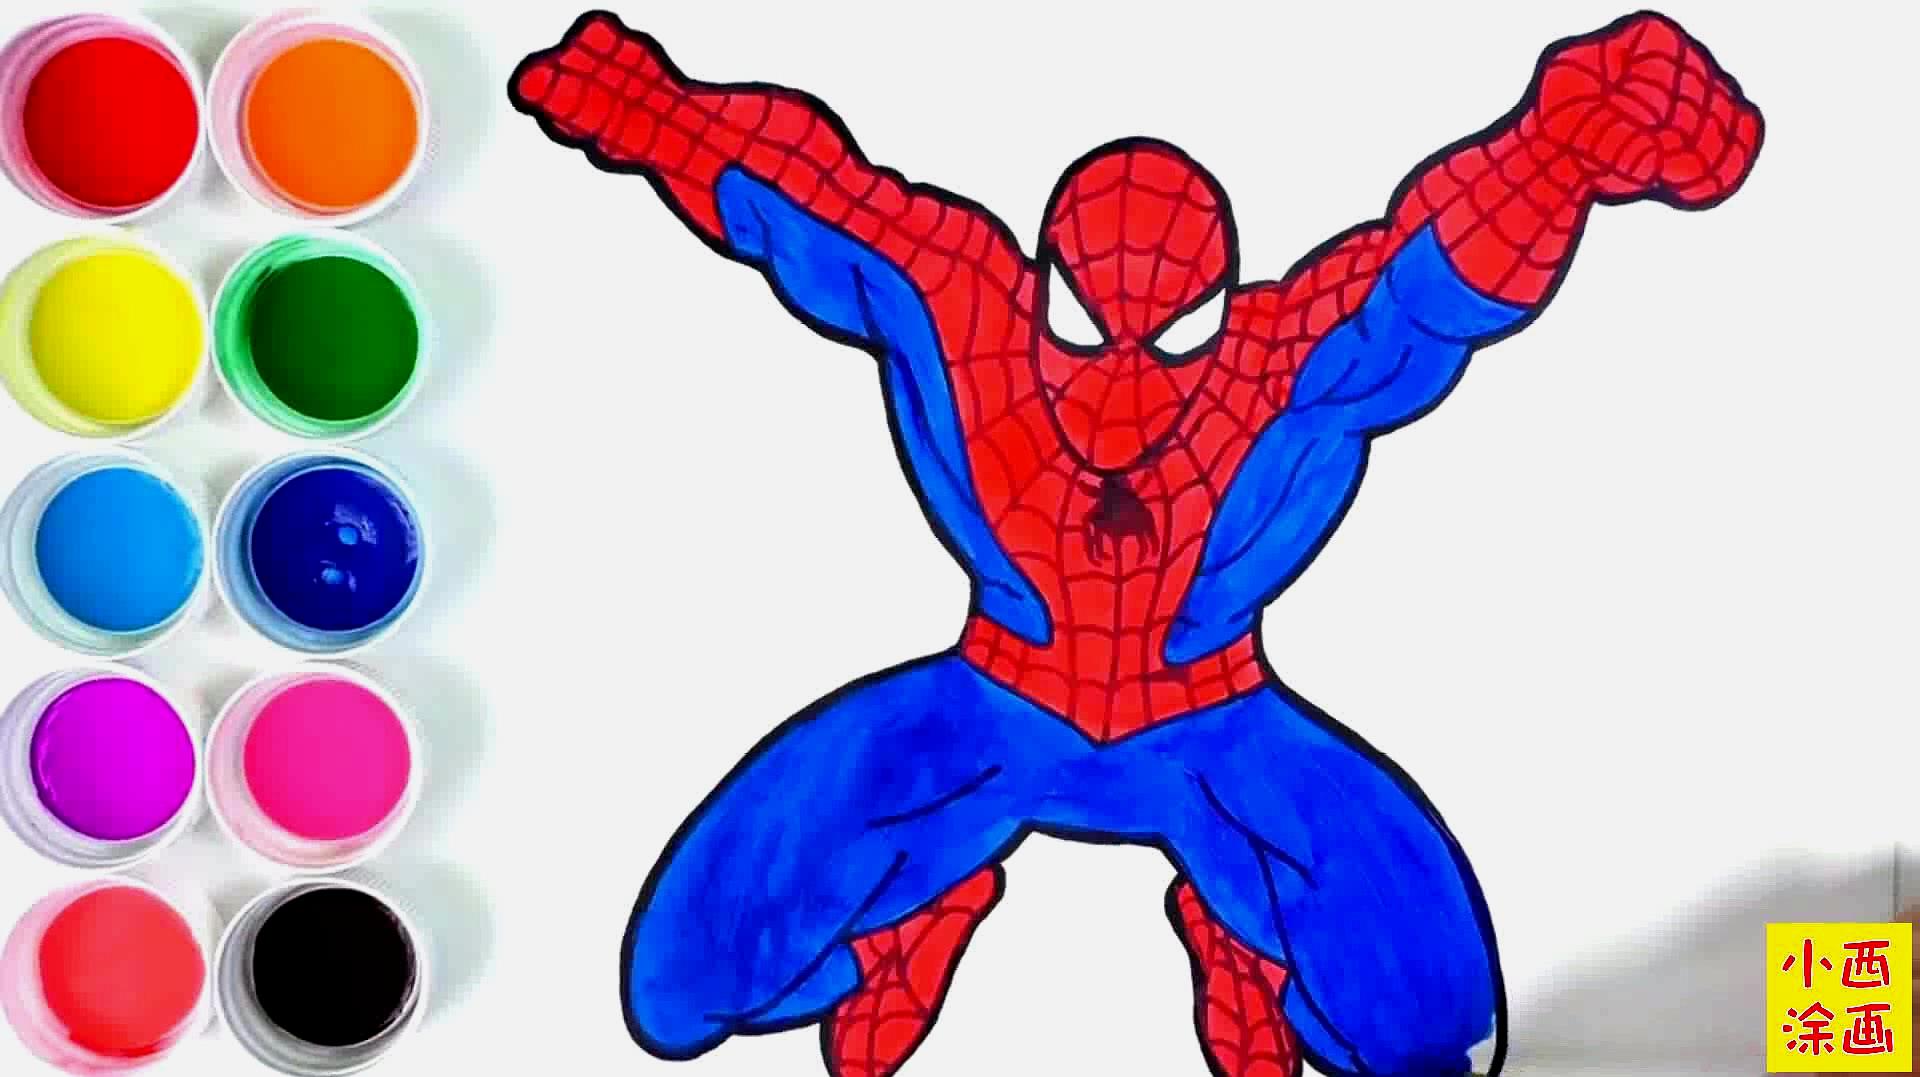 亲子创意简笔画,漫威英雄人物蜘蛛侠涂色识色,色彩早教益智视频